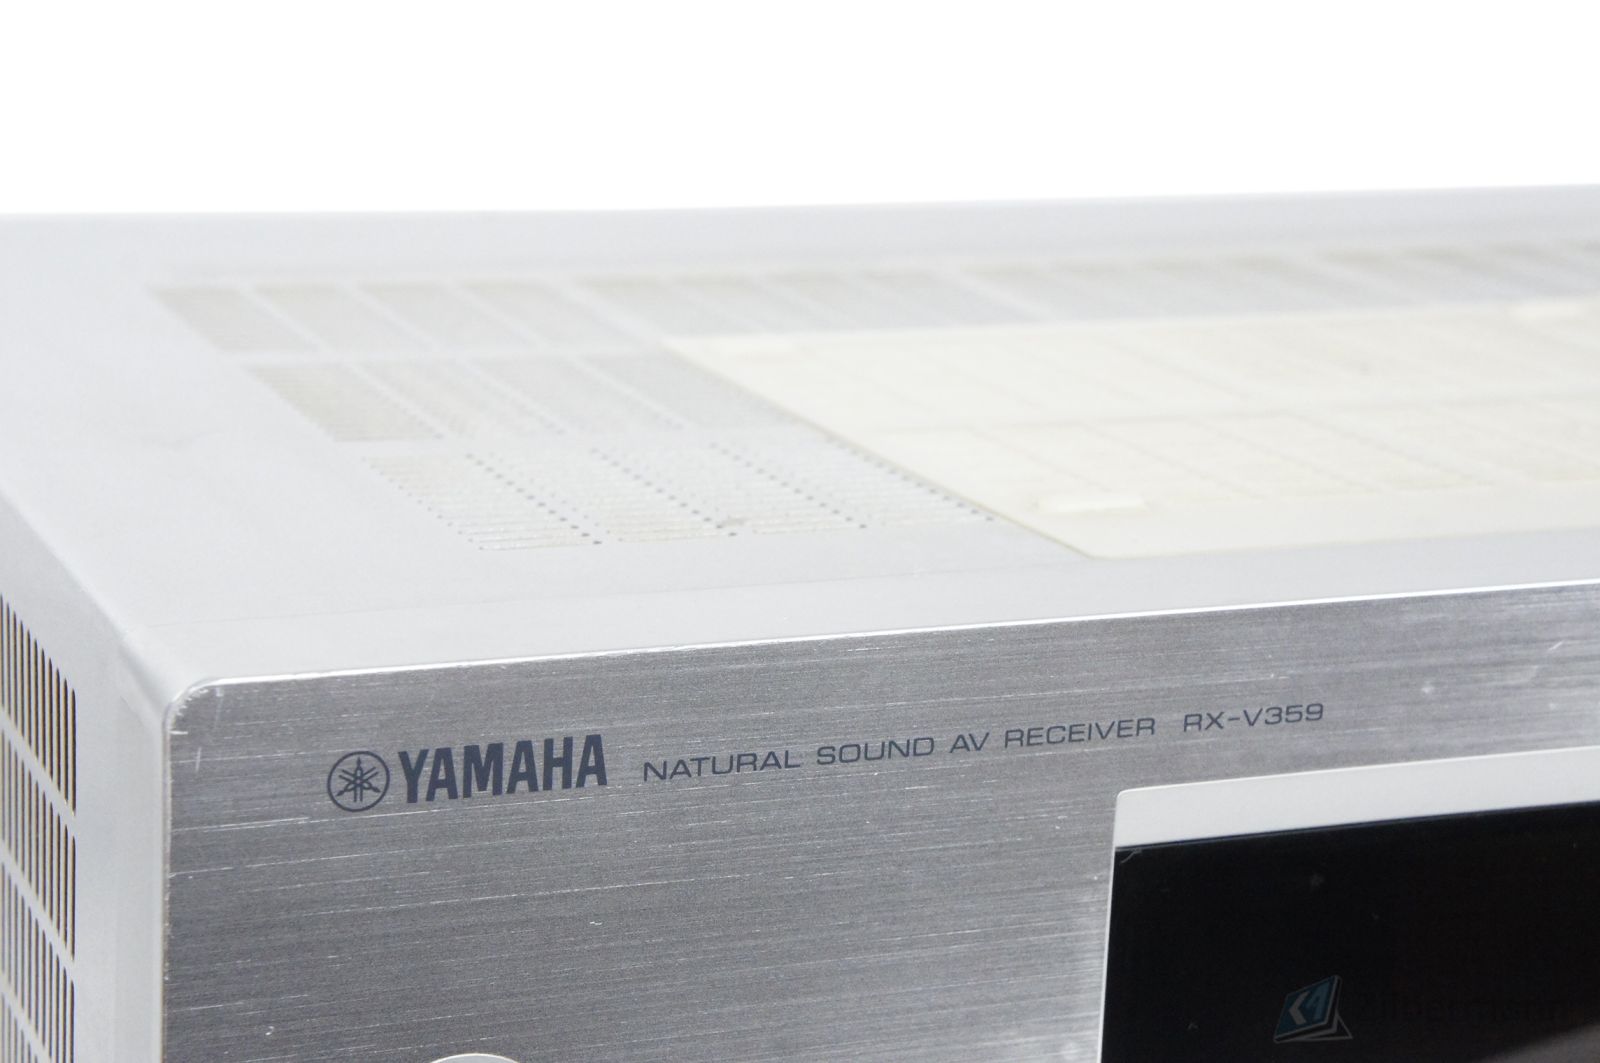 Yamaha_RX-V359_Natural_Sound_AV_Receiver_03